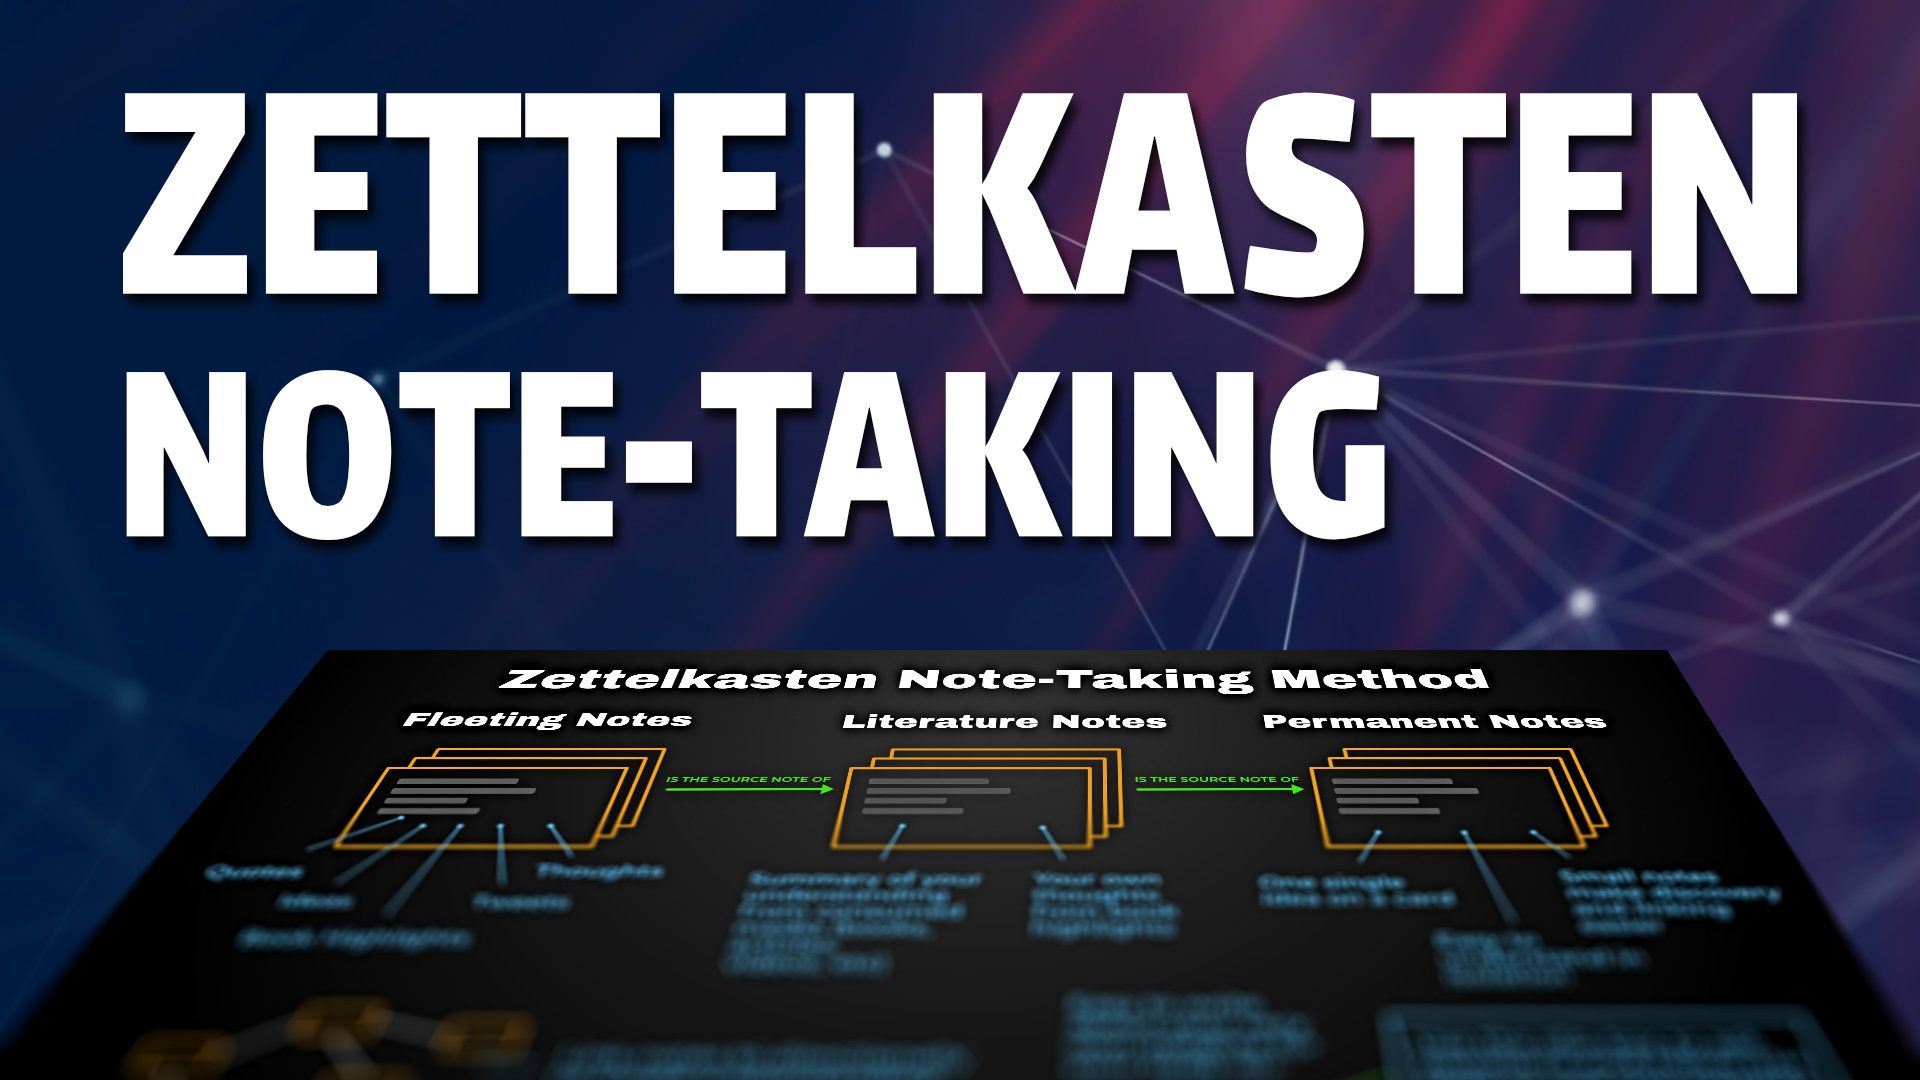 Understanding the zettelkasten note-taking method